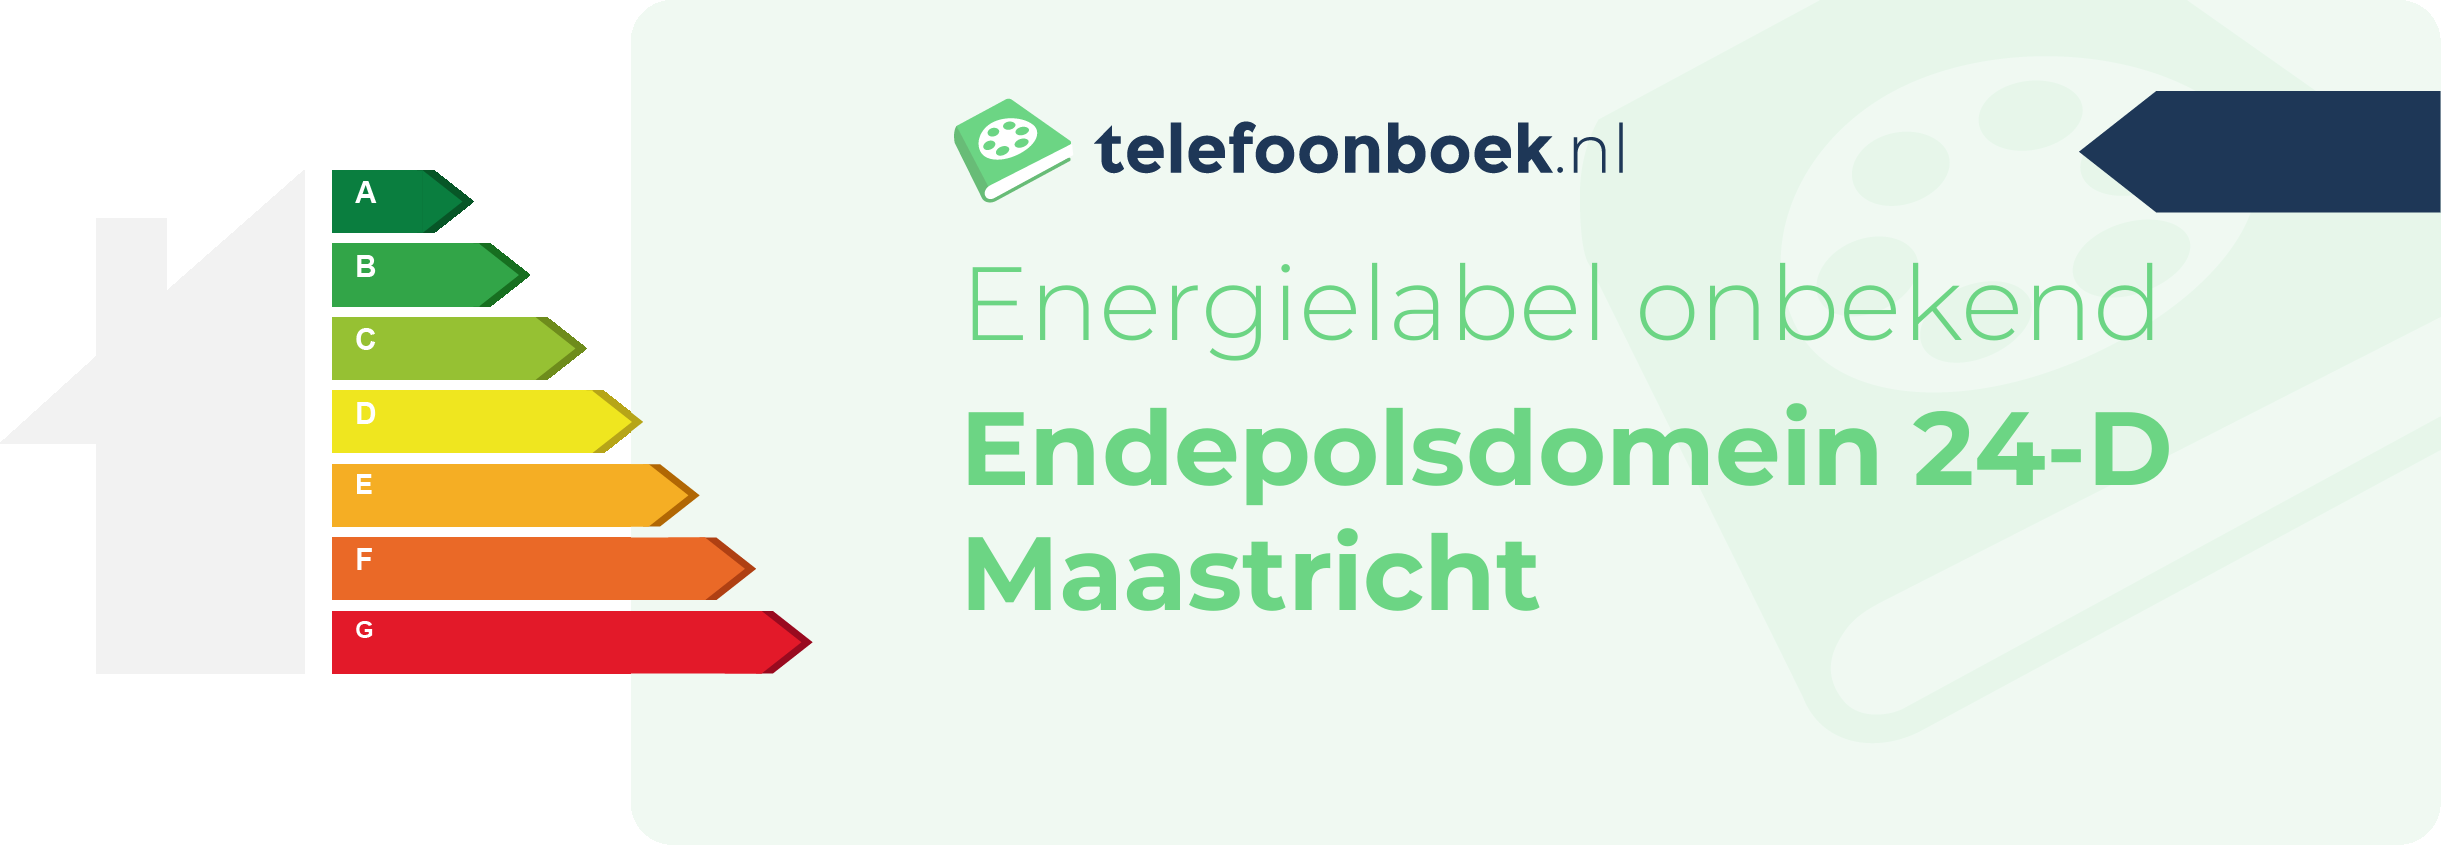 Energielabel Endepolsdomein 24-D Maastricht